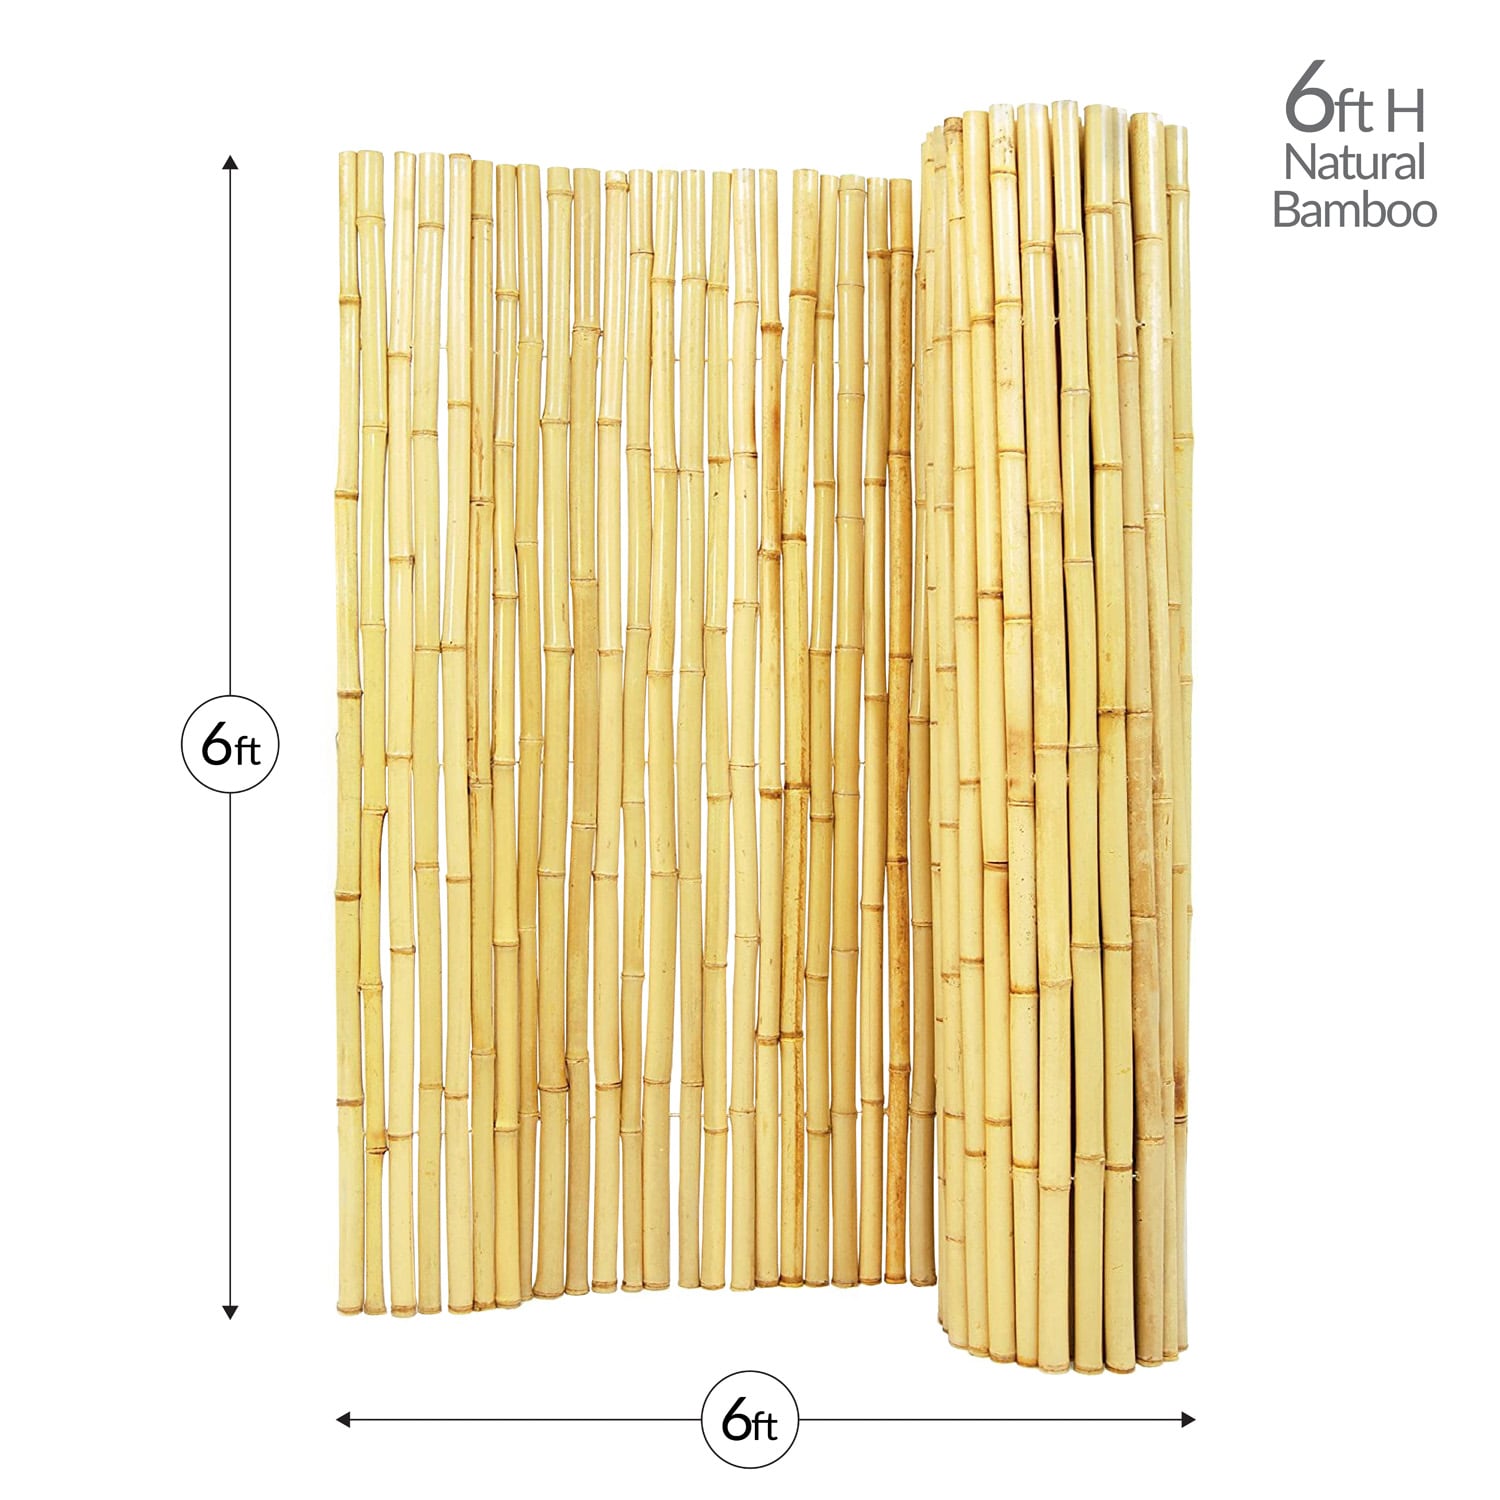 6ft bamboos x10 